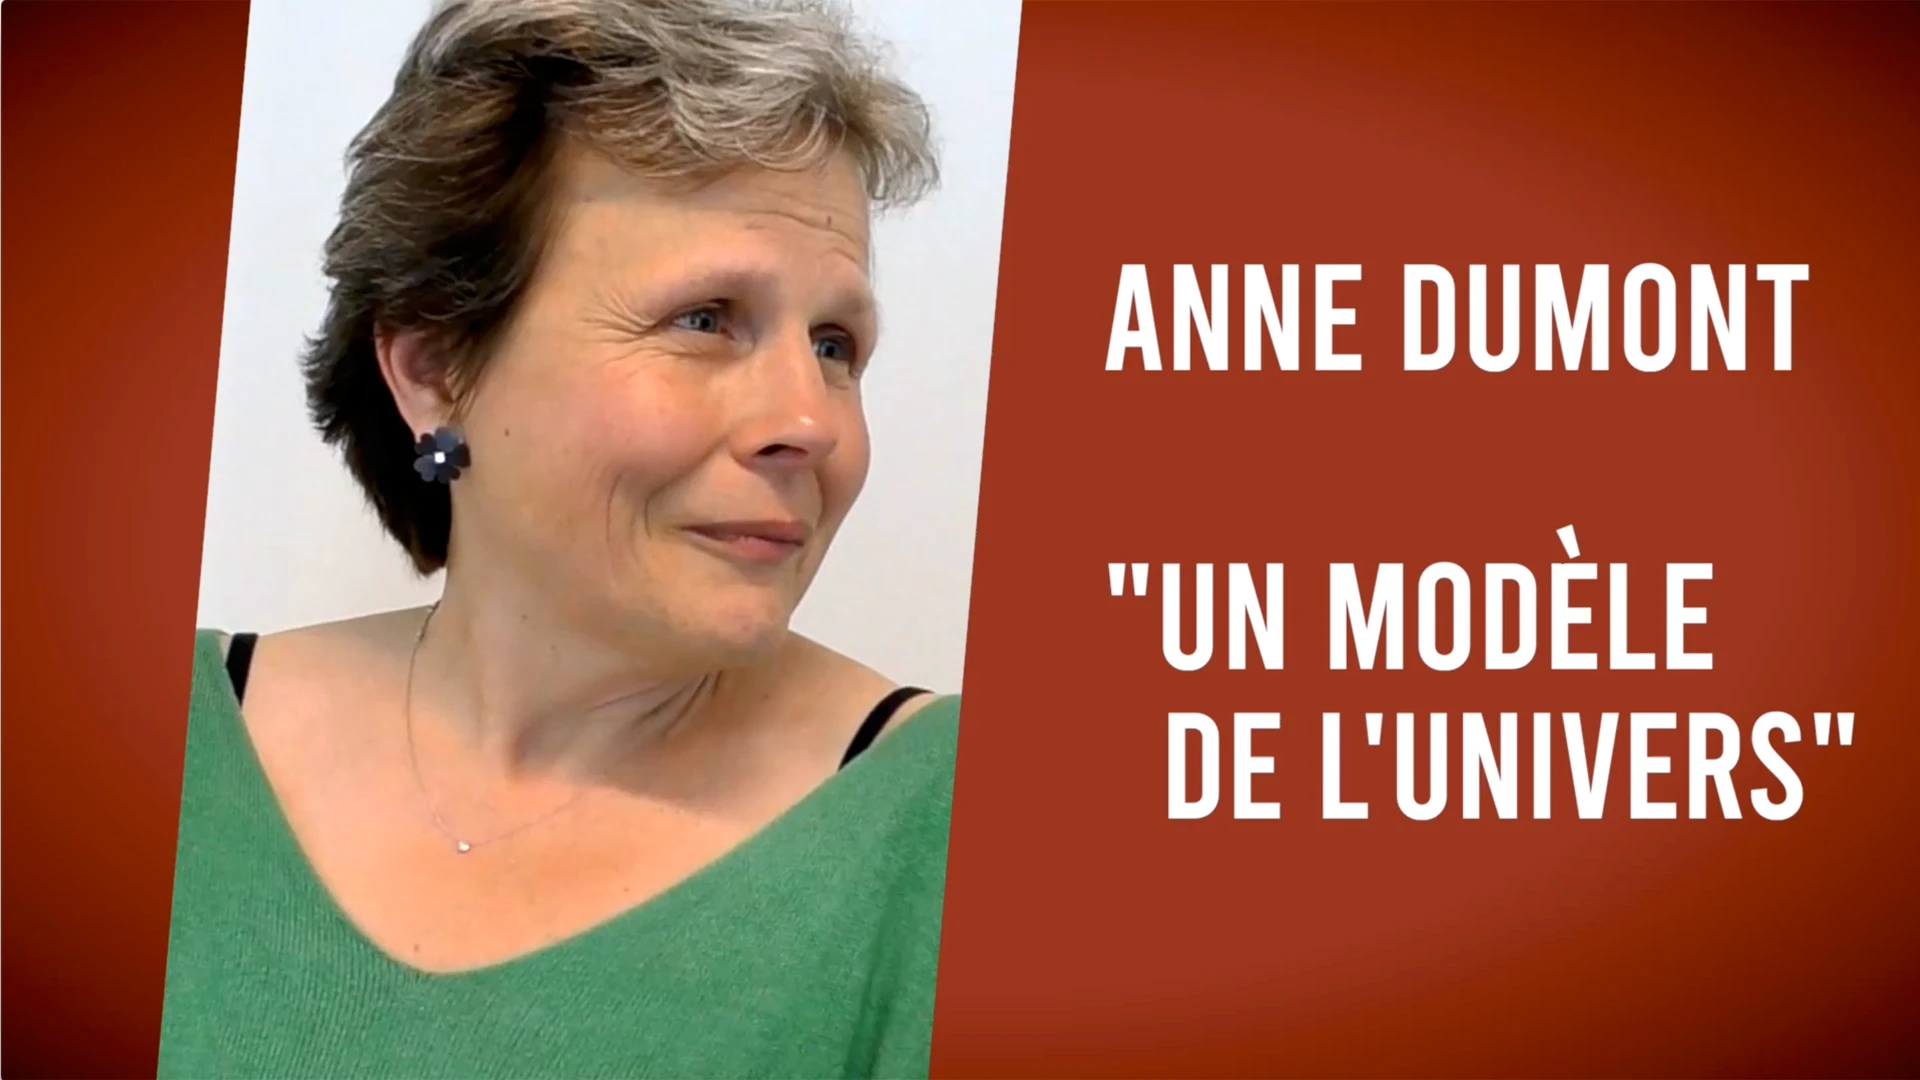 Anne Dumont “Un modèle de l’univers“